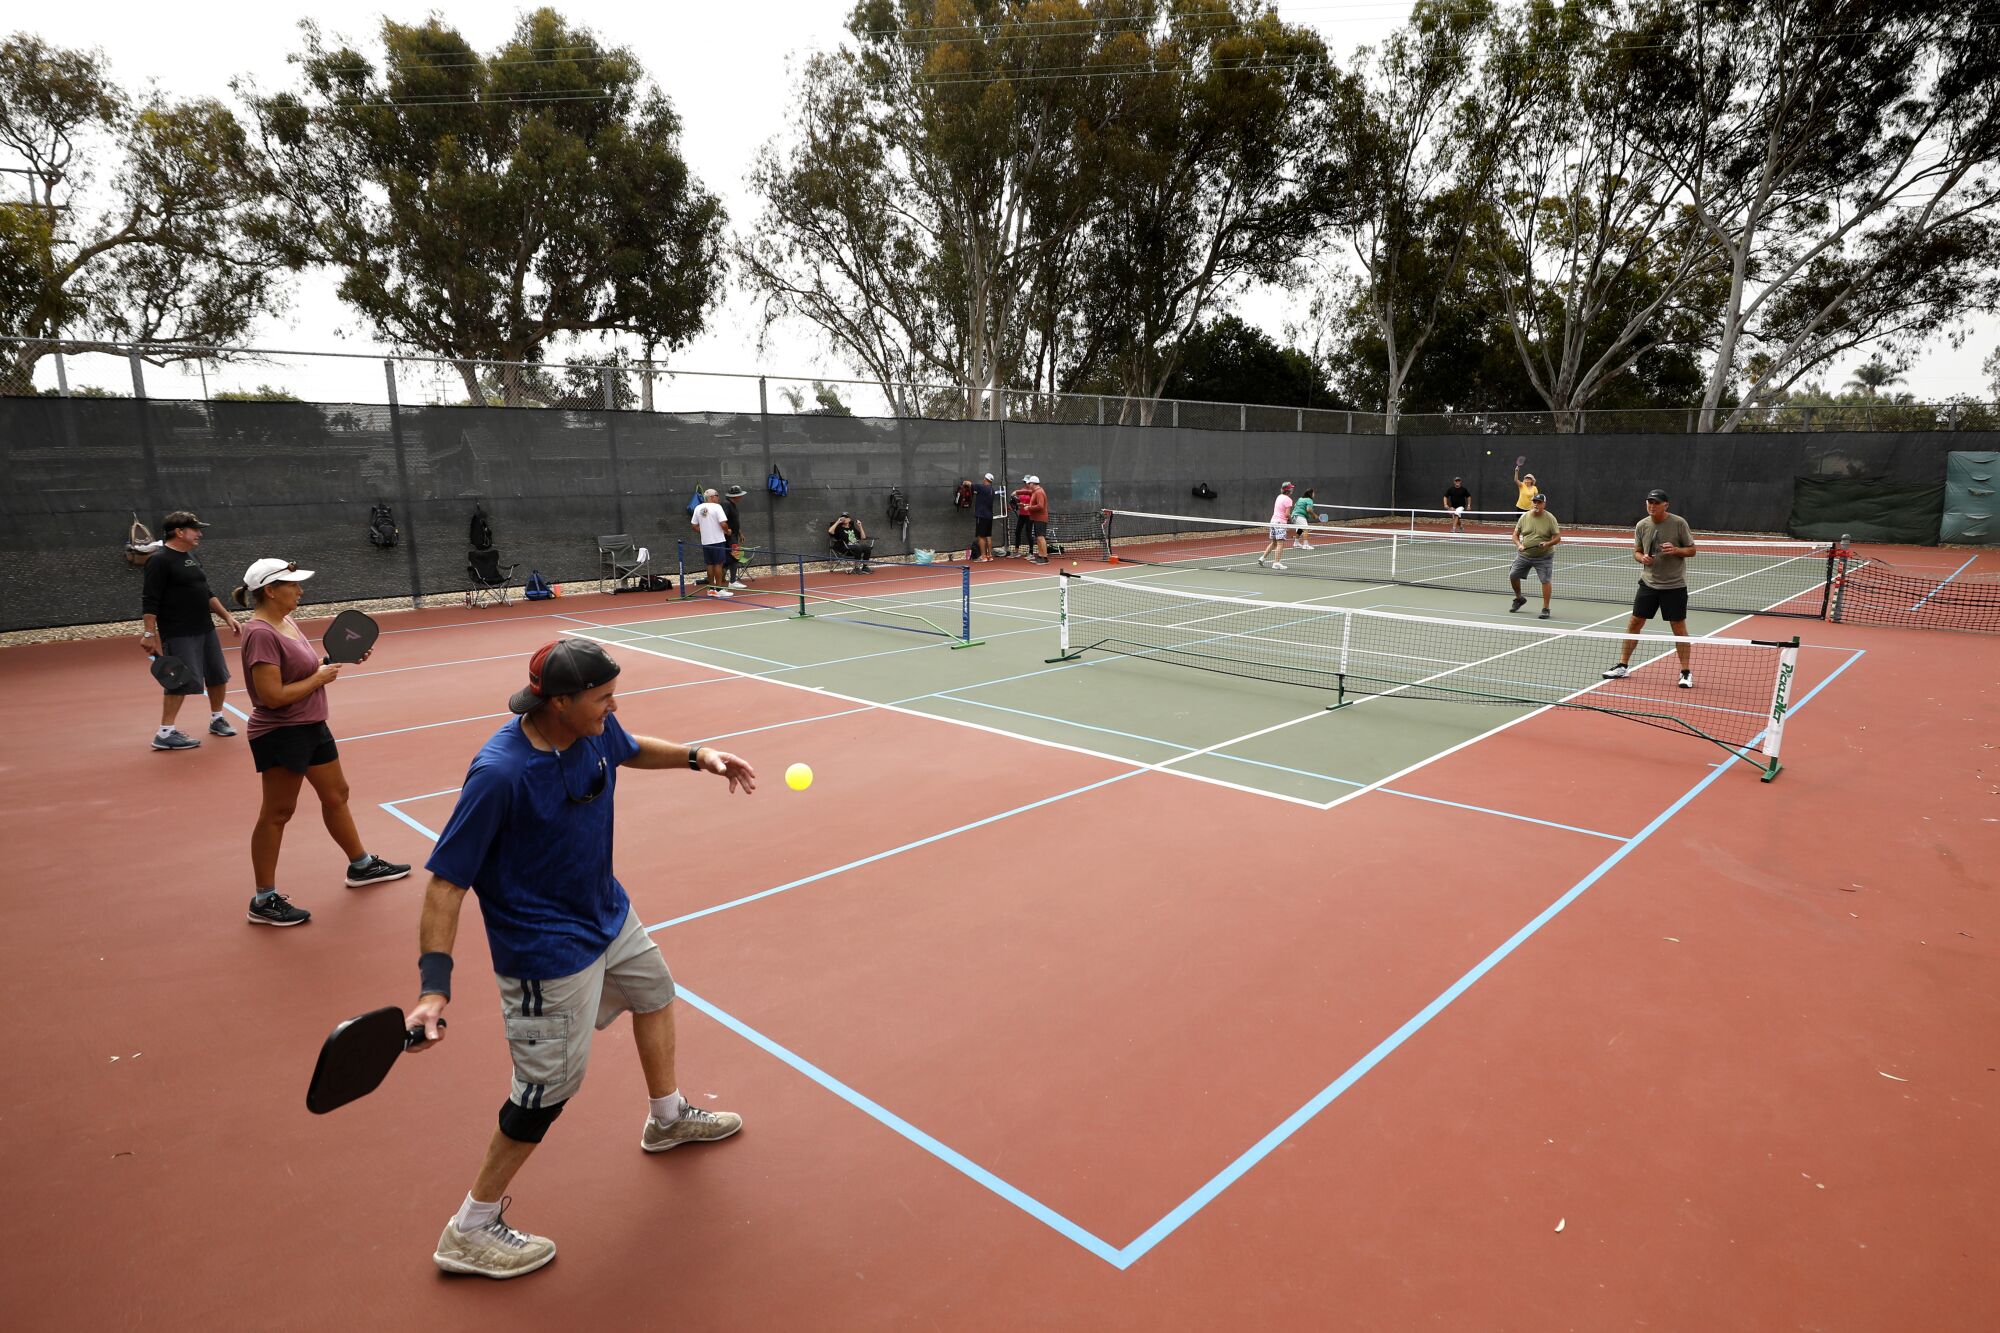 Turf war heating up between tennis pickleball in San Diego The San